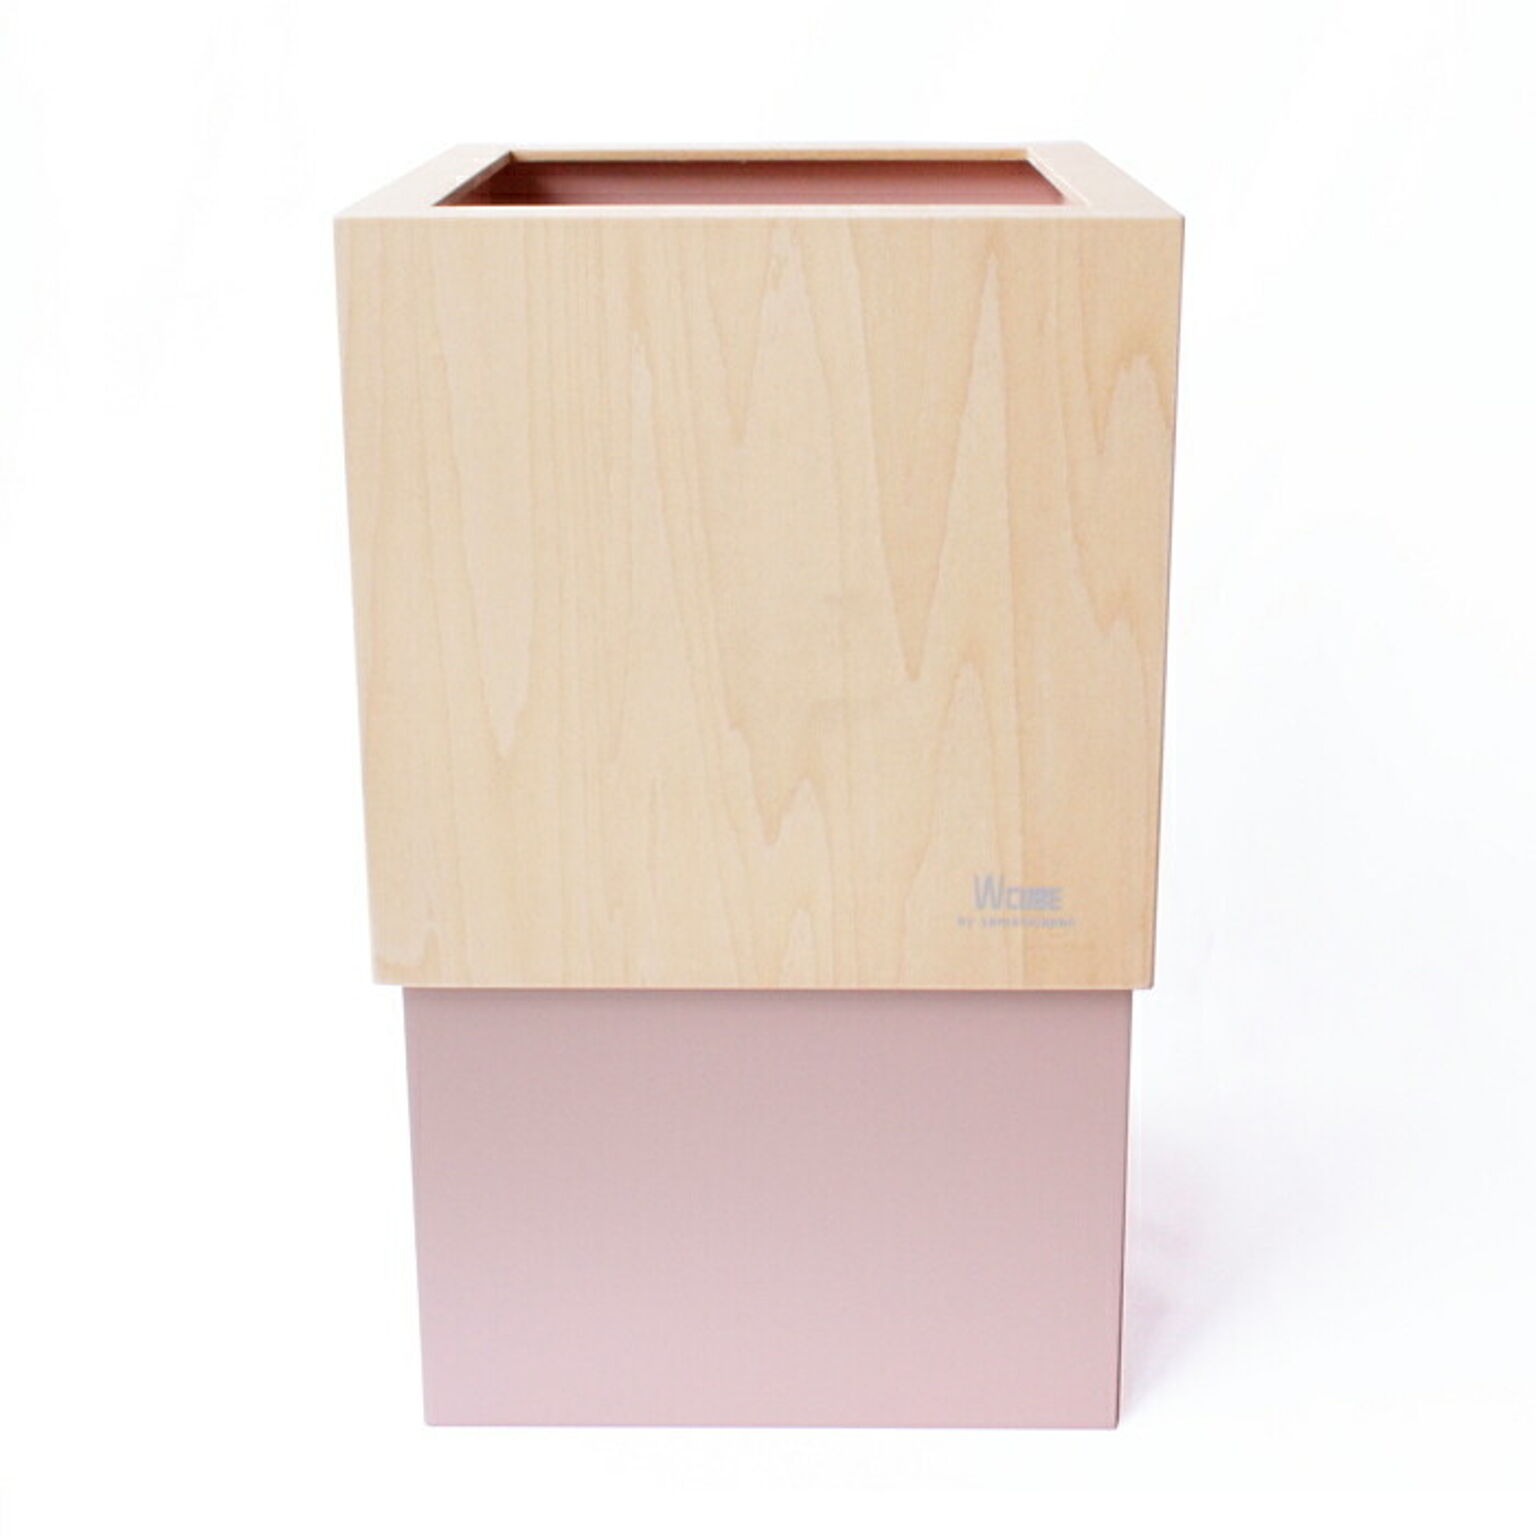 ゴミ箱 ダストボックス ごみ箱 日本製 10L 木 天然木 木製 隠せる ビニール袋 ゴミ袋 リビング 寝室 ヤマト工芸